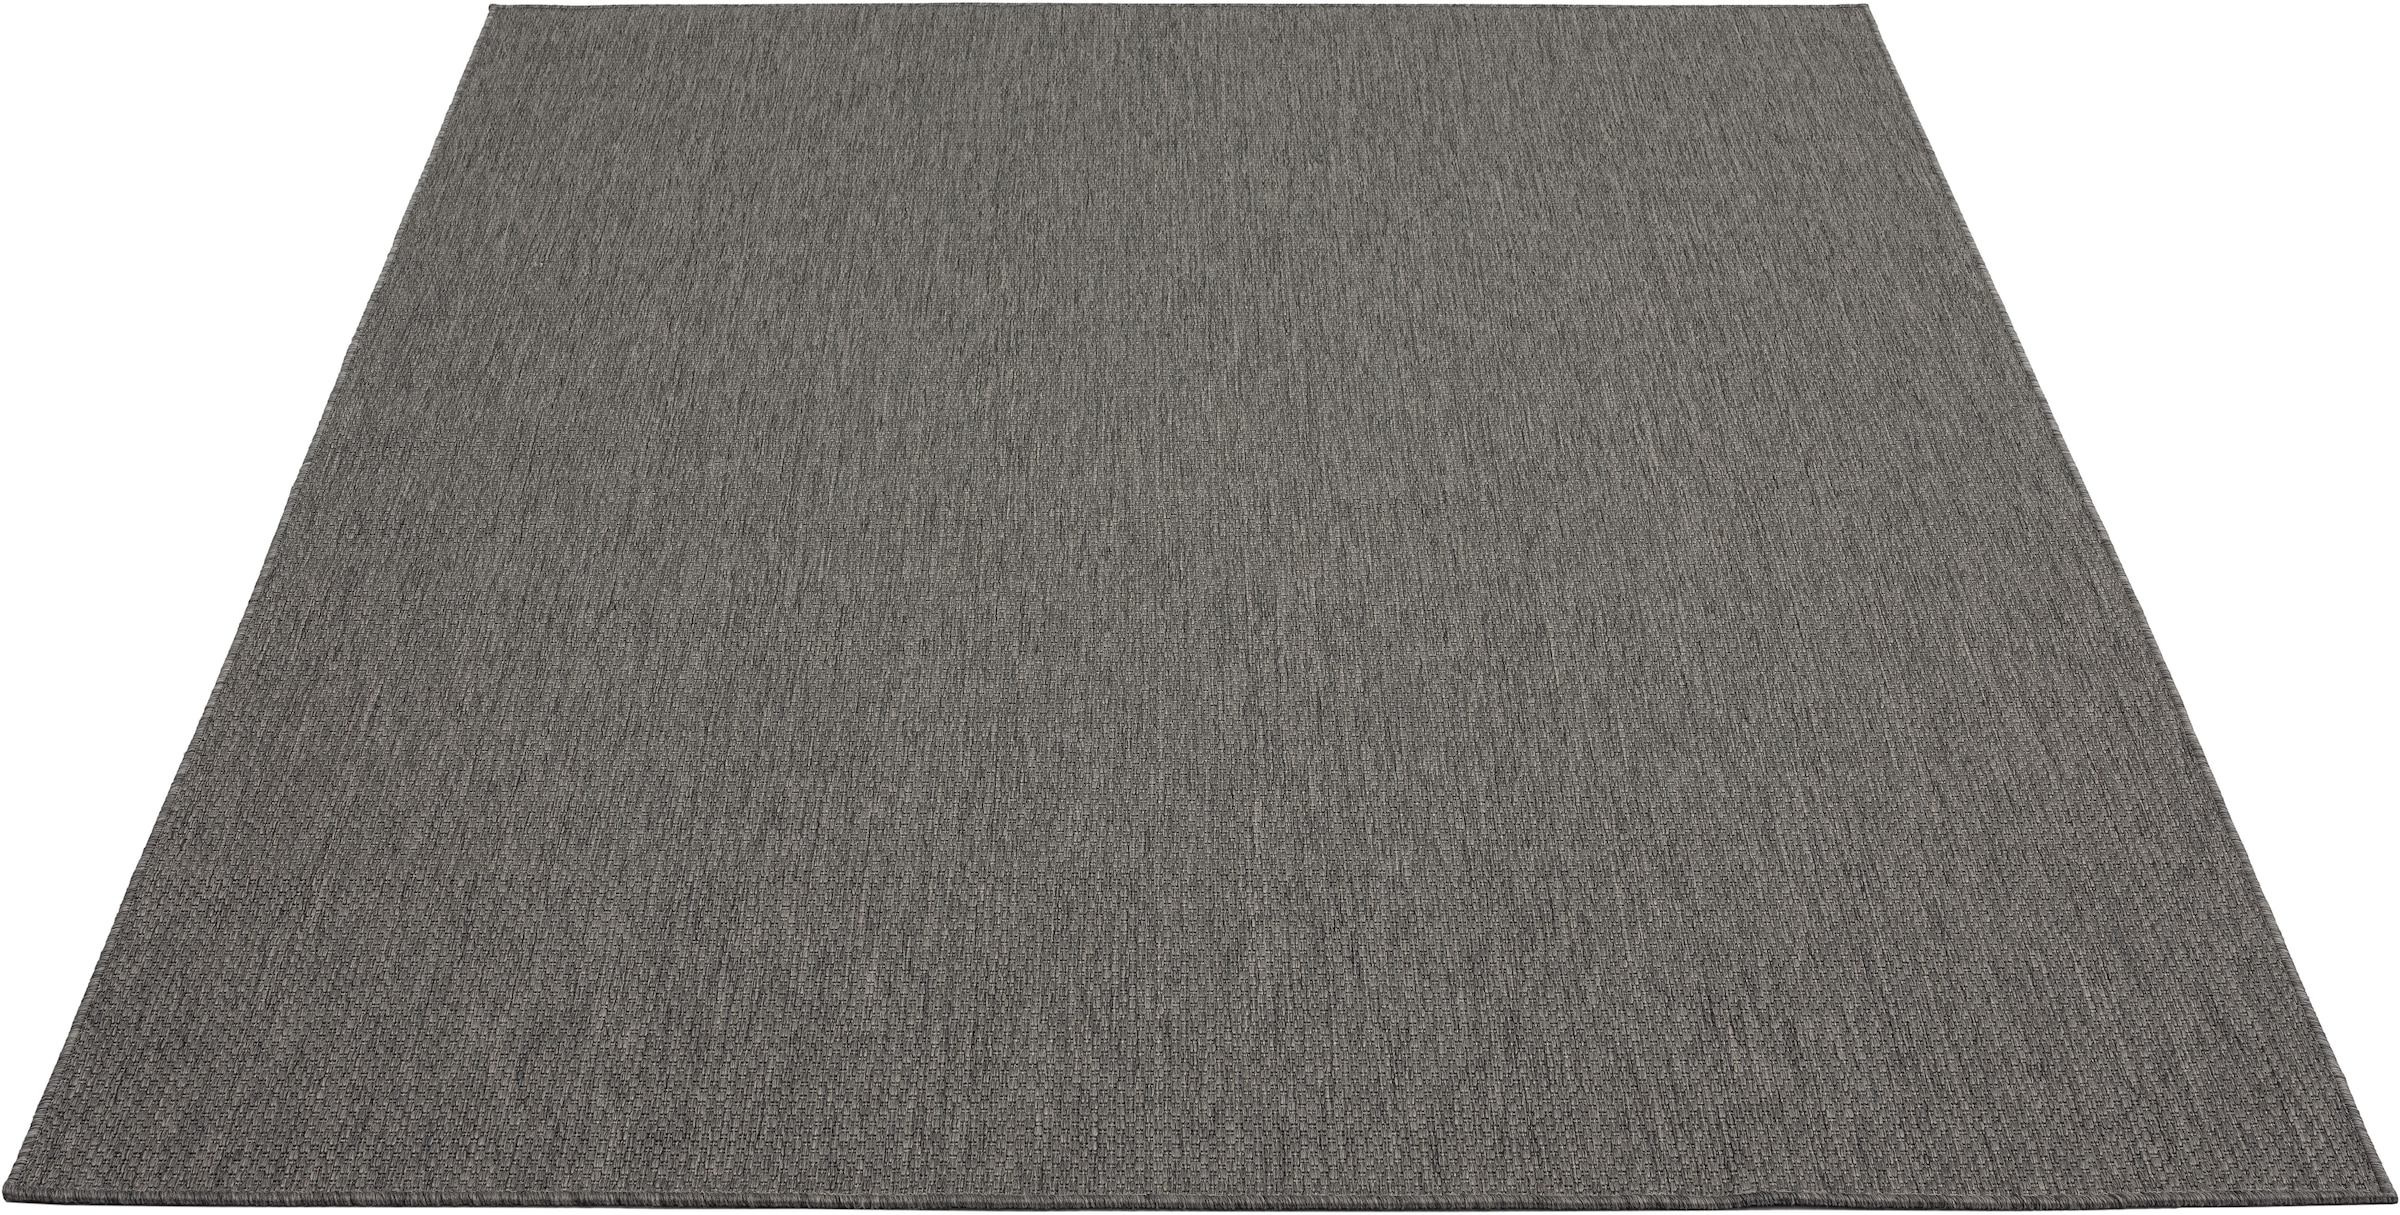 Leonique Teppich »Saylor«, rechteckig, In- und Outdoor geeignet, Sisal-Optik, Wetterfest & UV-beständig